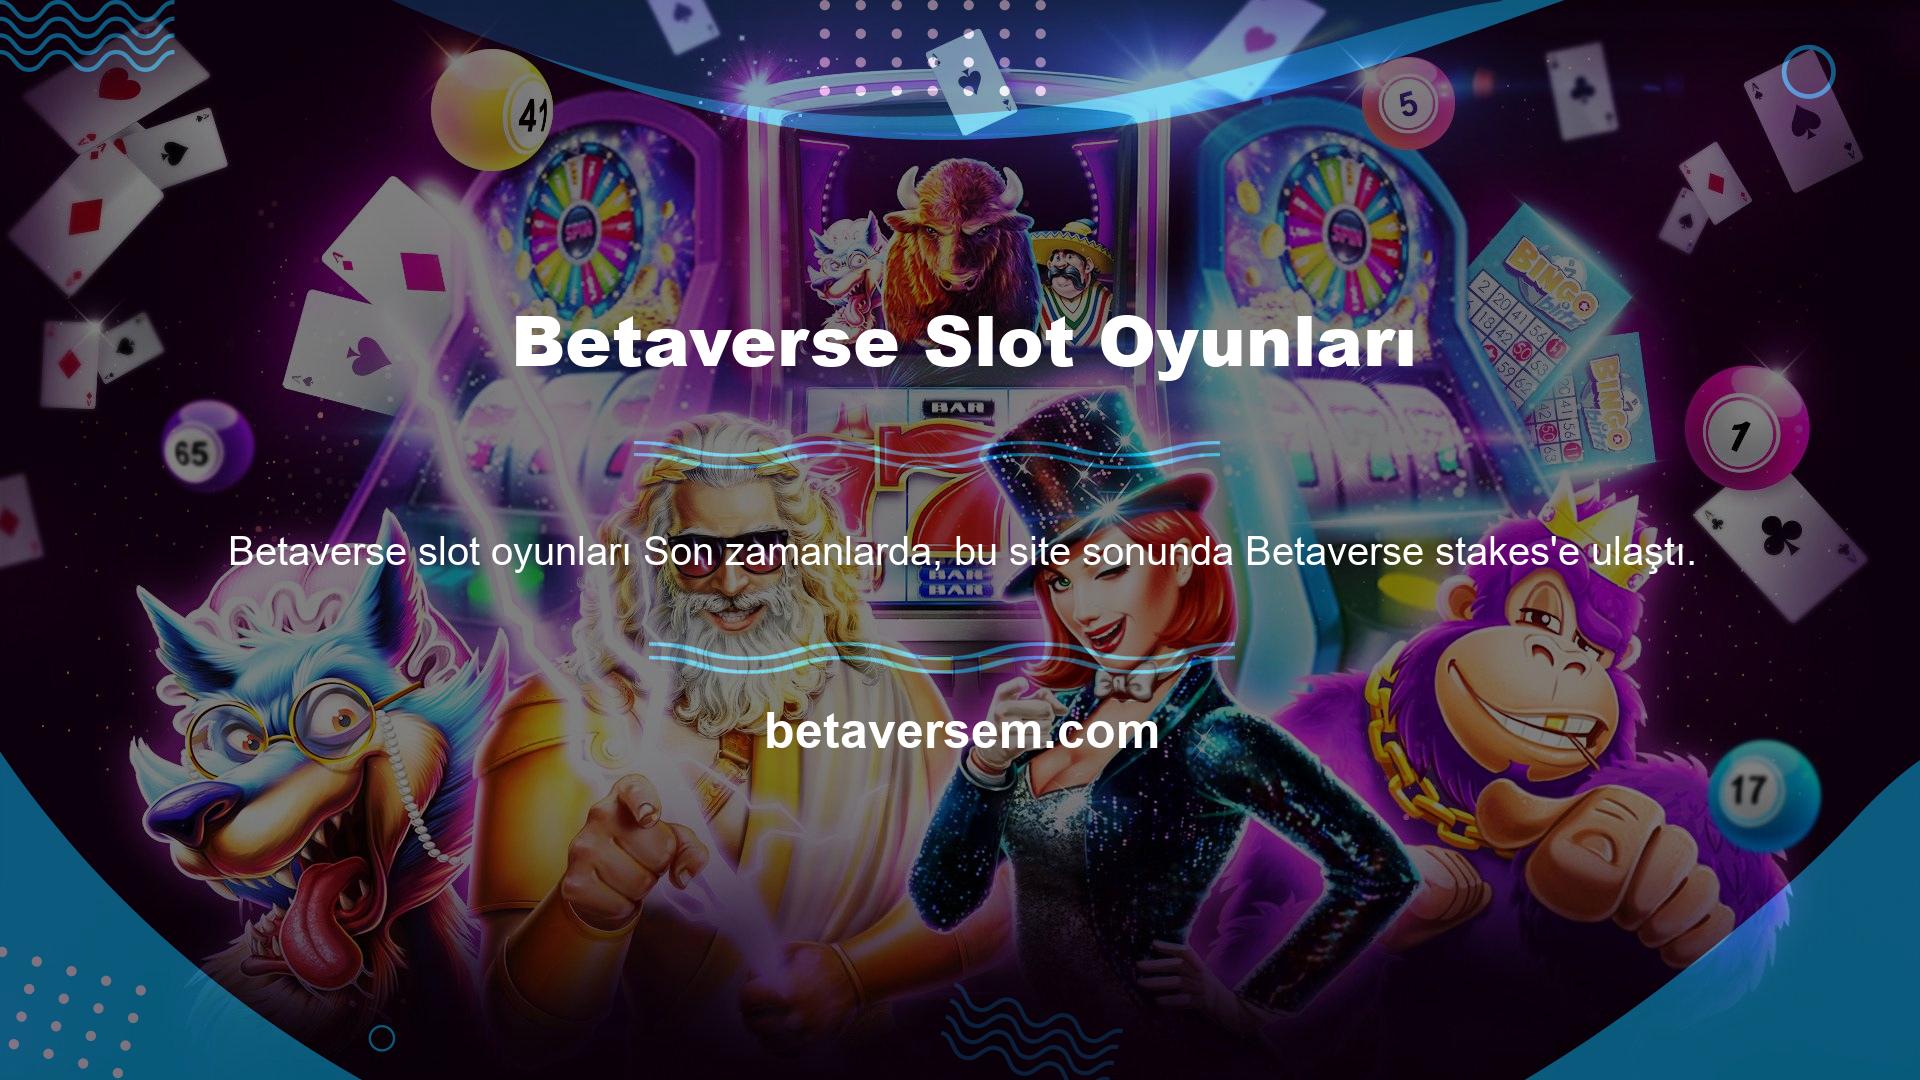 Betaverse Slot Oyunları Kendi BTK blok payına sahip olan Betaverse bahisleri her zaman olduğu gibi güncellendi